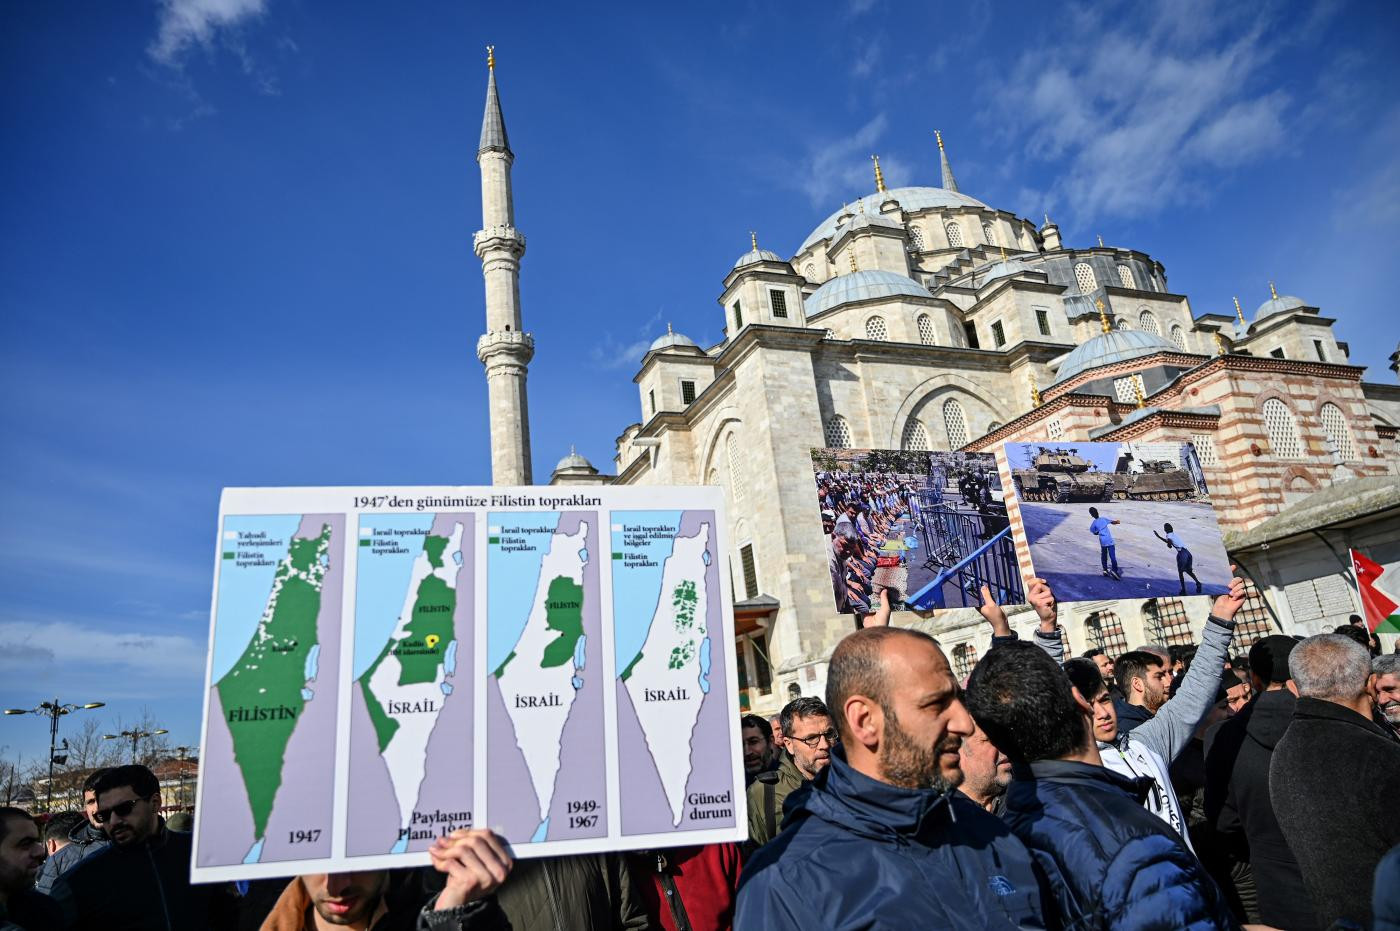 Người dân cầm bản đồ Palestine-Israel theo thời gian trong cuộc biểu tình tại nhà thờ Hồi giáo Fatih ở Istanbul. Ảnh: AFP